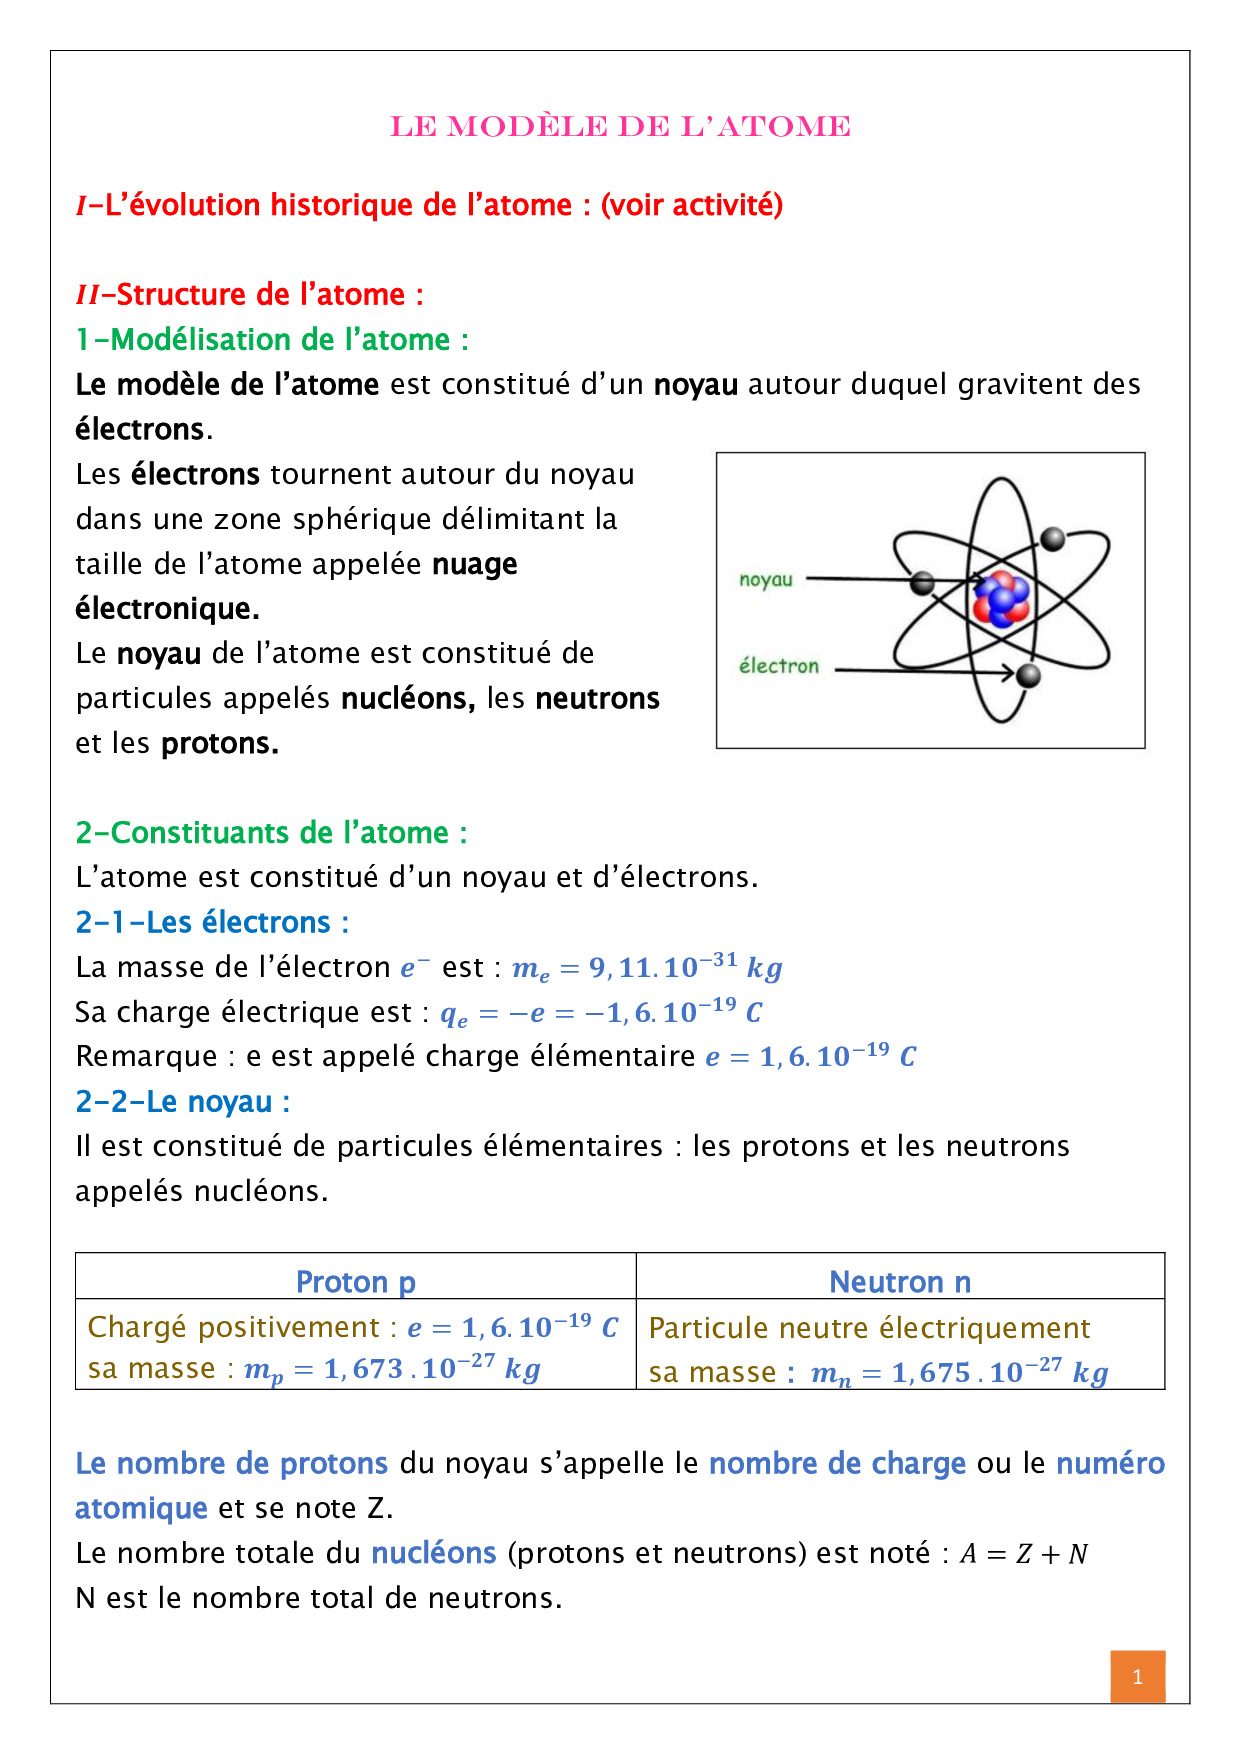 Le modèle de l'atome - Cours 1 - AlloSchool